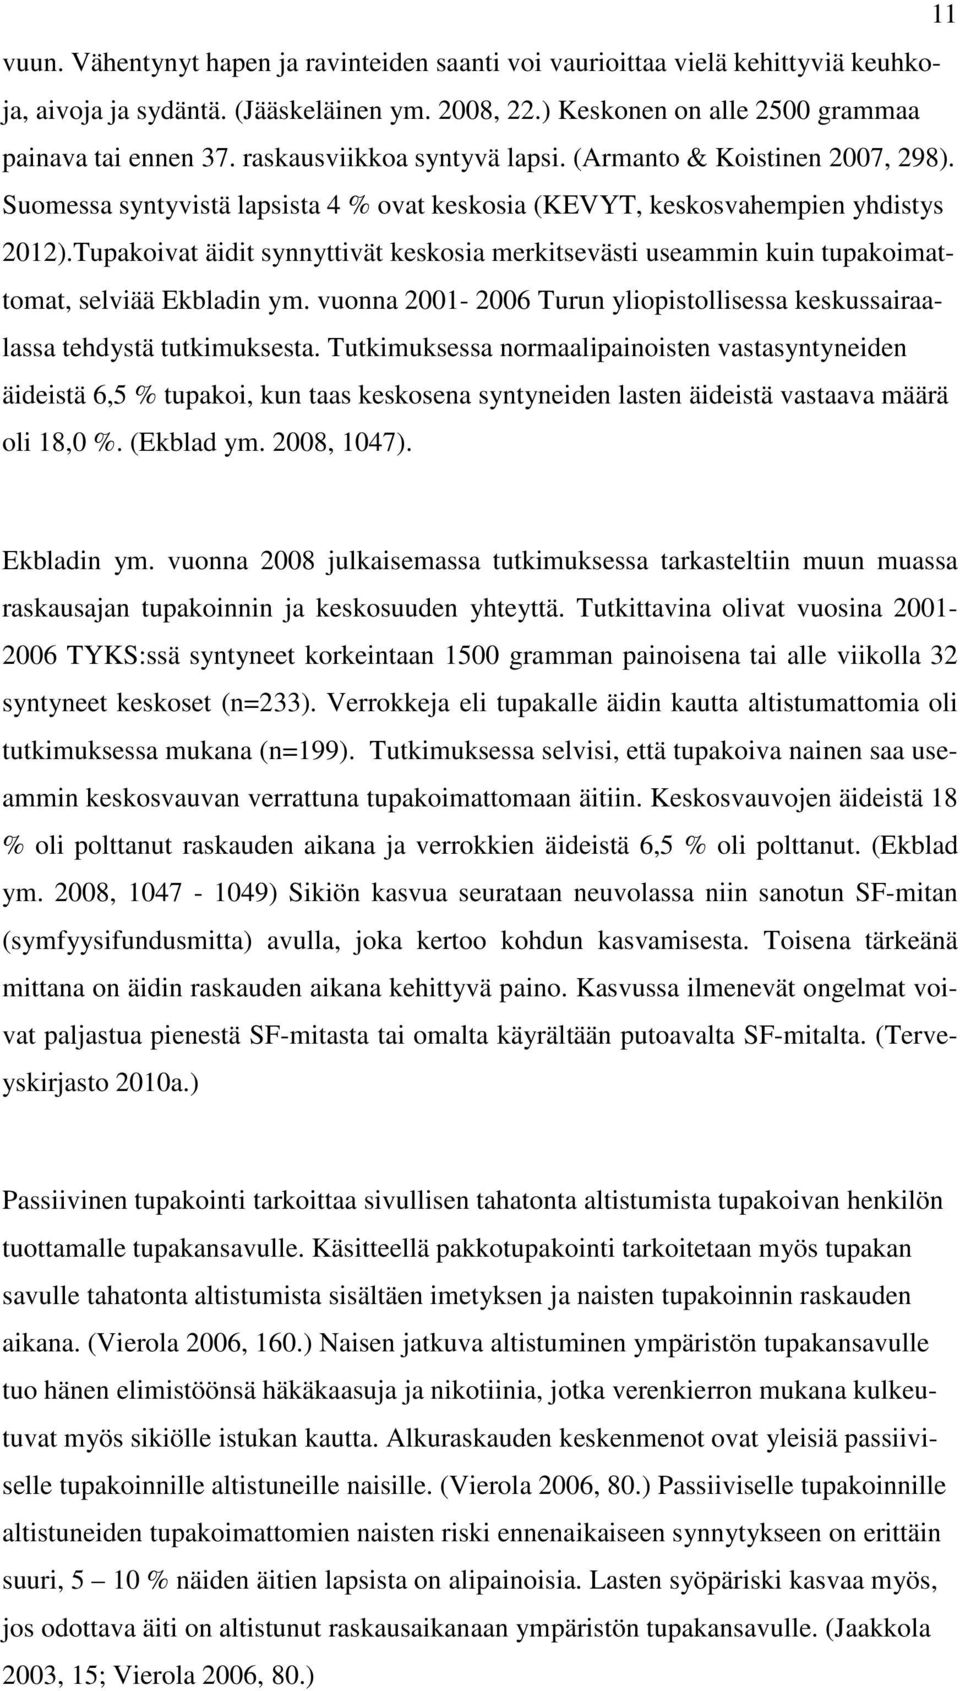 Tupakoivat äidit synnyttivät keskosia merkitsevästi useammin kuin tupakoimattomat, selviää Ekbladin ym. vuonna 2001-2006 Turun yliopistollisessa keskussairaalassa tehdystä tutkimuksesta.